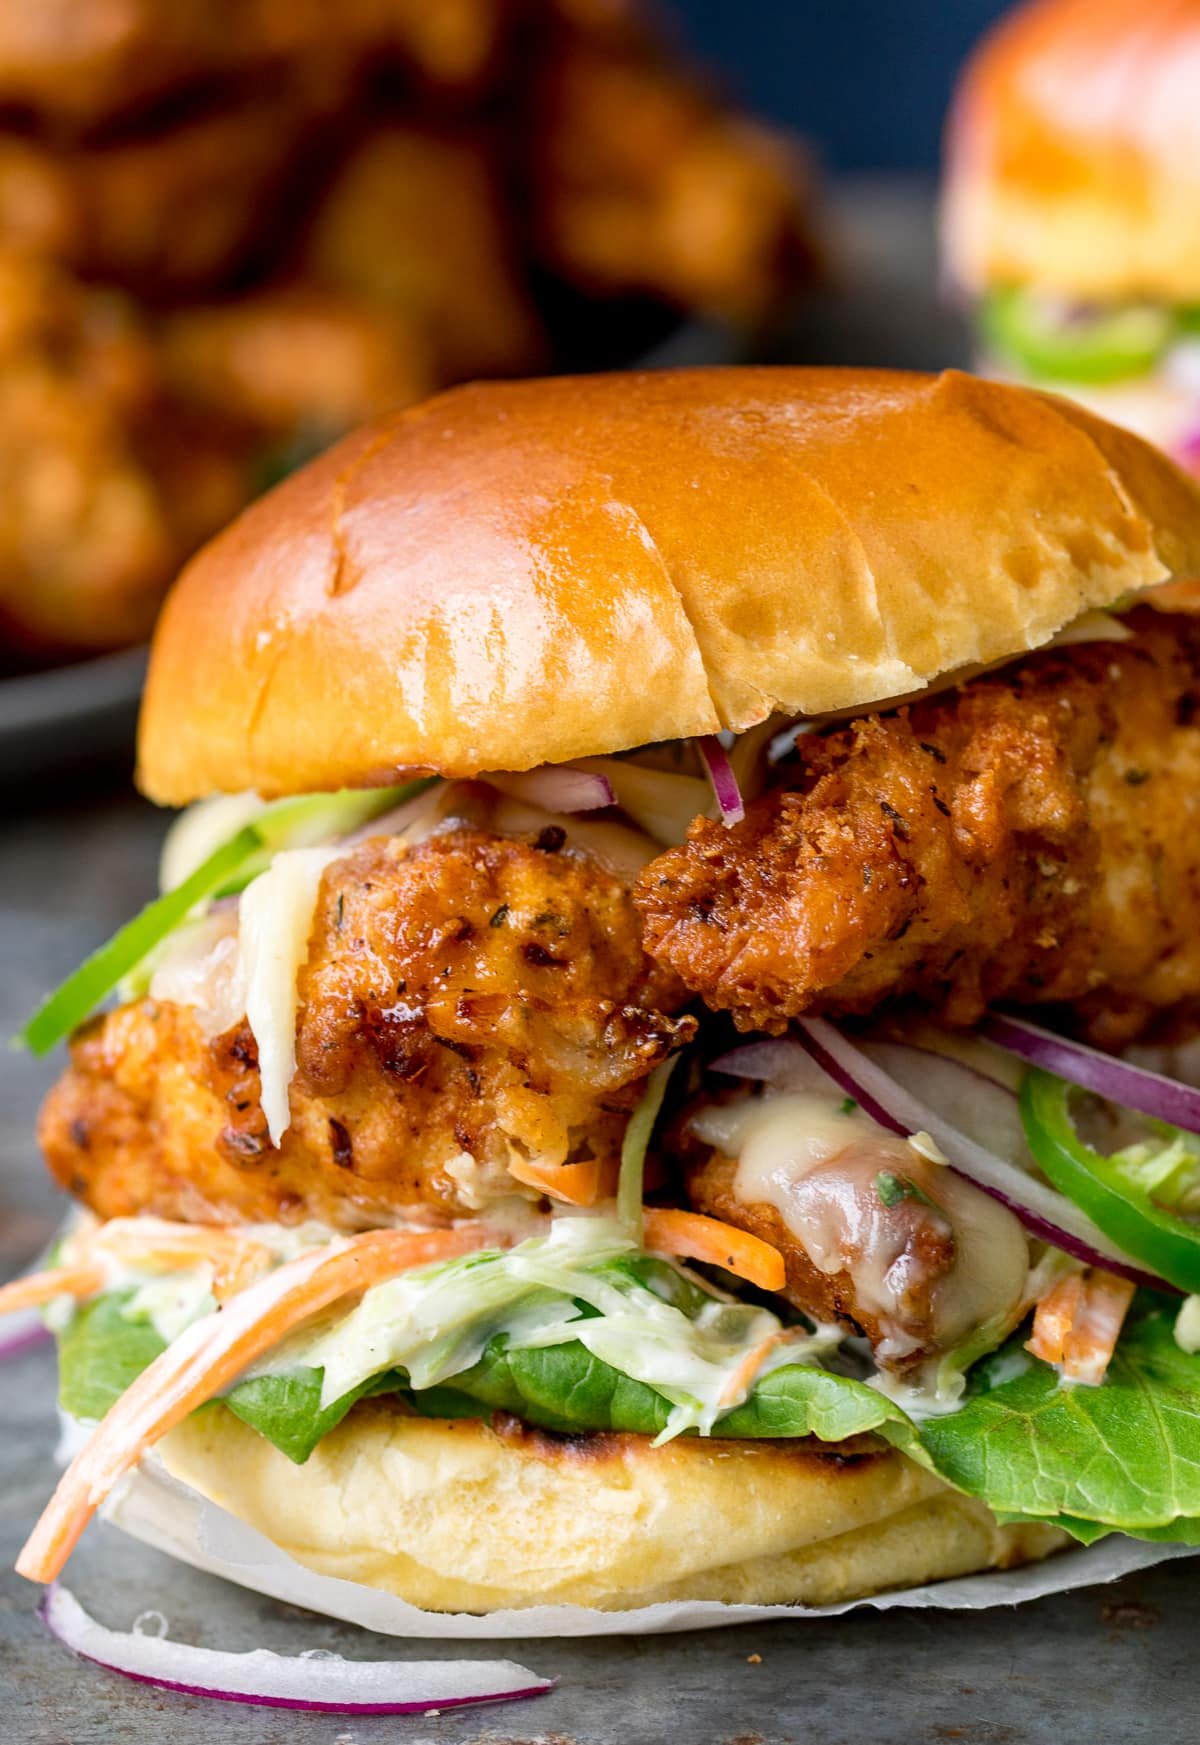 Nahaufnahme eines Crispy Chicken Burgers auf einem Brioche-Brötchen mit Salat.